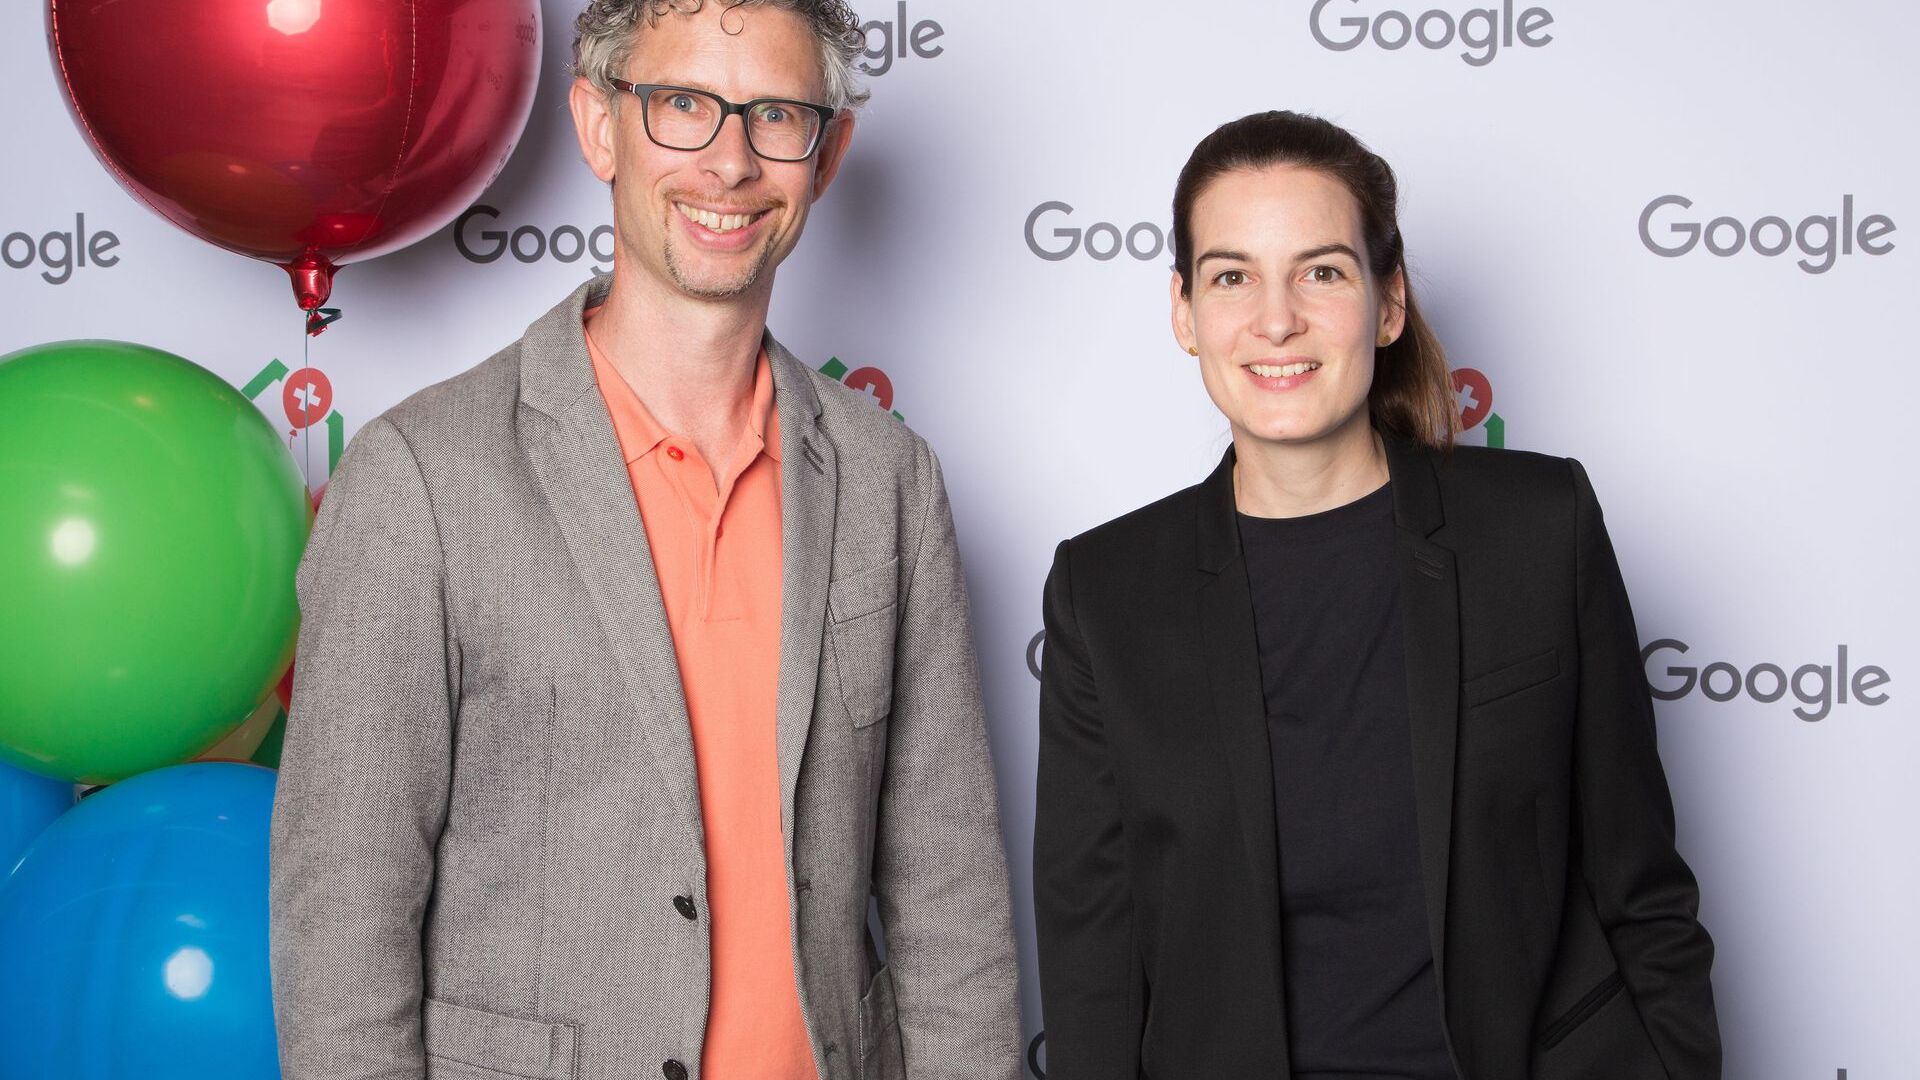 Семюель Лейзер і Піа Де Карлі, медіа-команда Google Switzerland, відвідали офіційне відкриття нового Google Campus Europaallee у Цюріху 27 червня 2022 року.